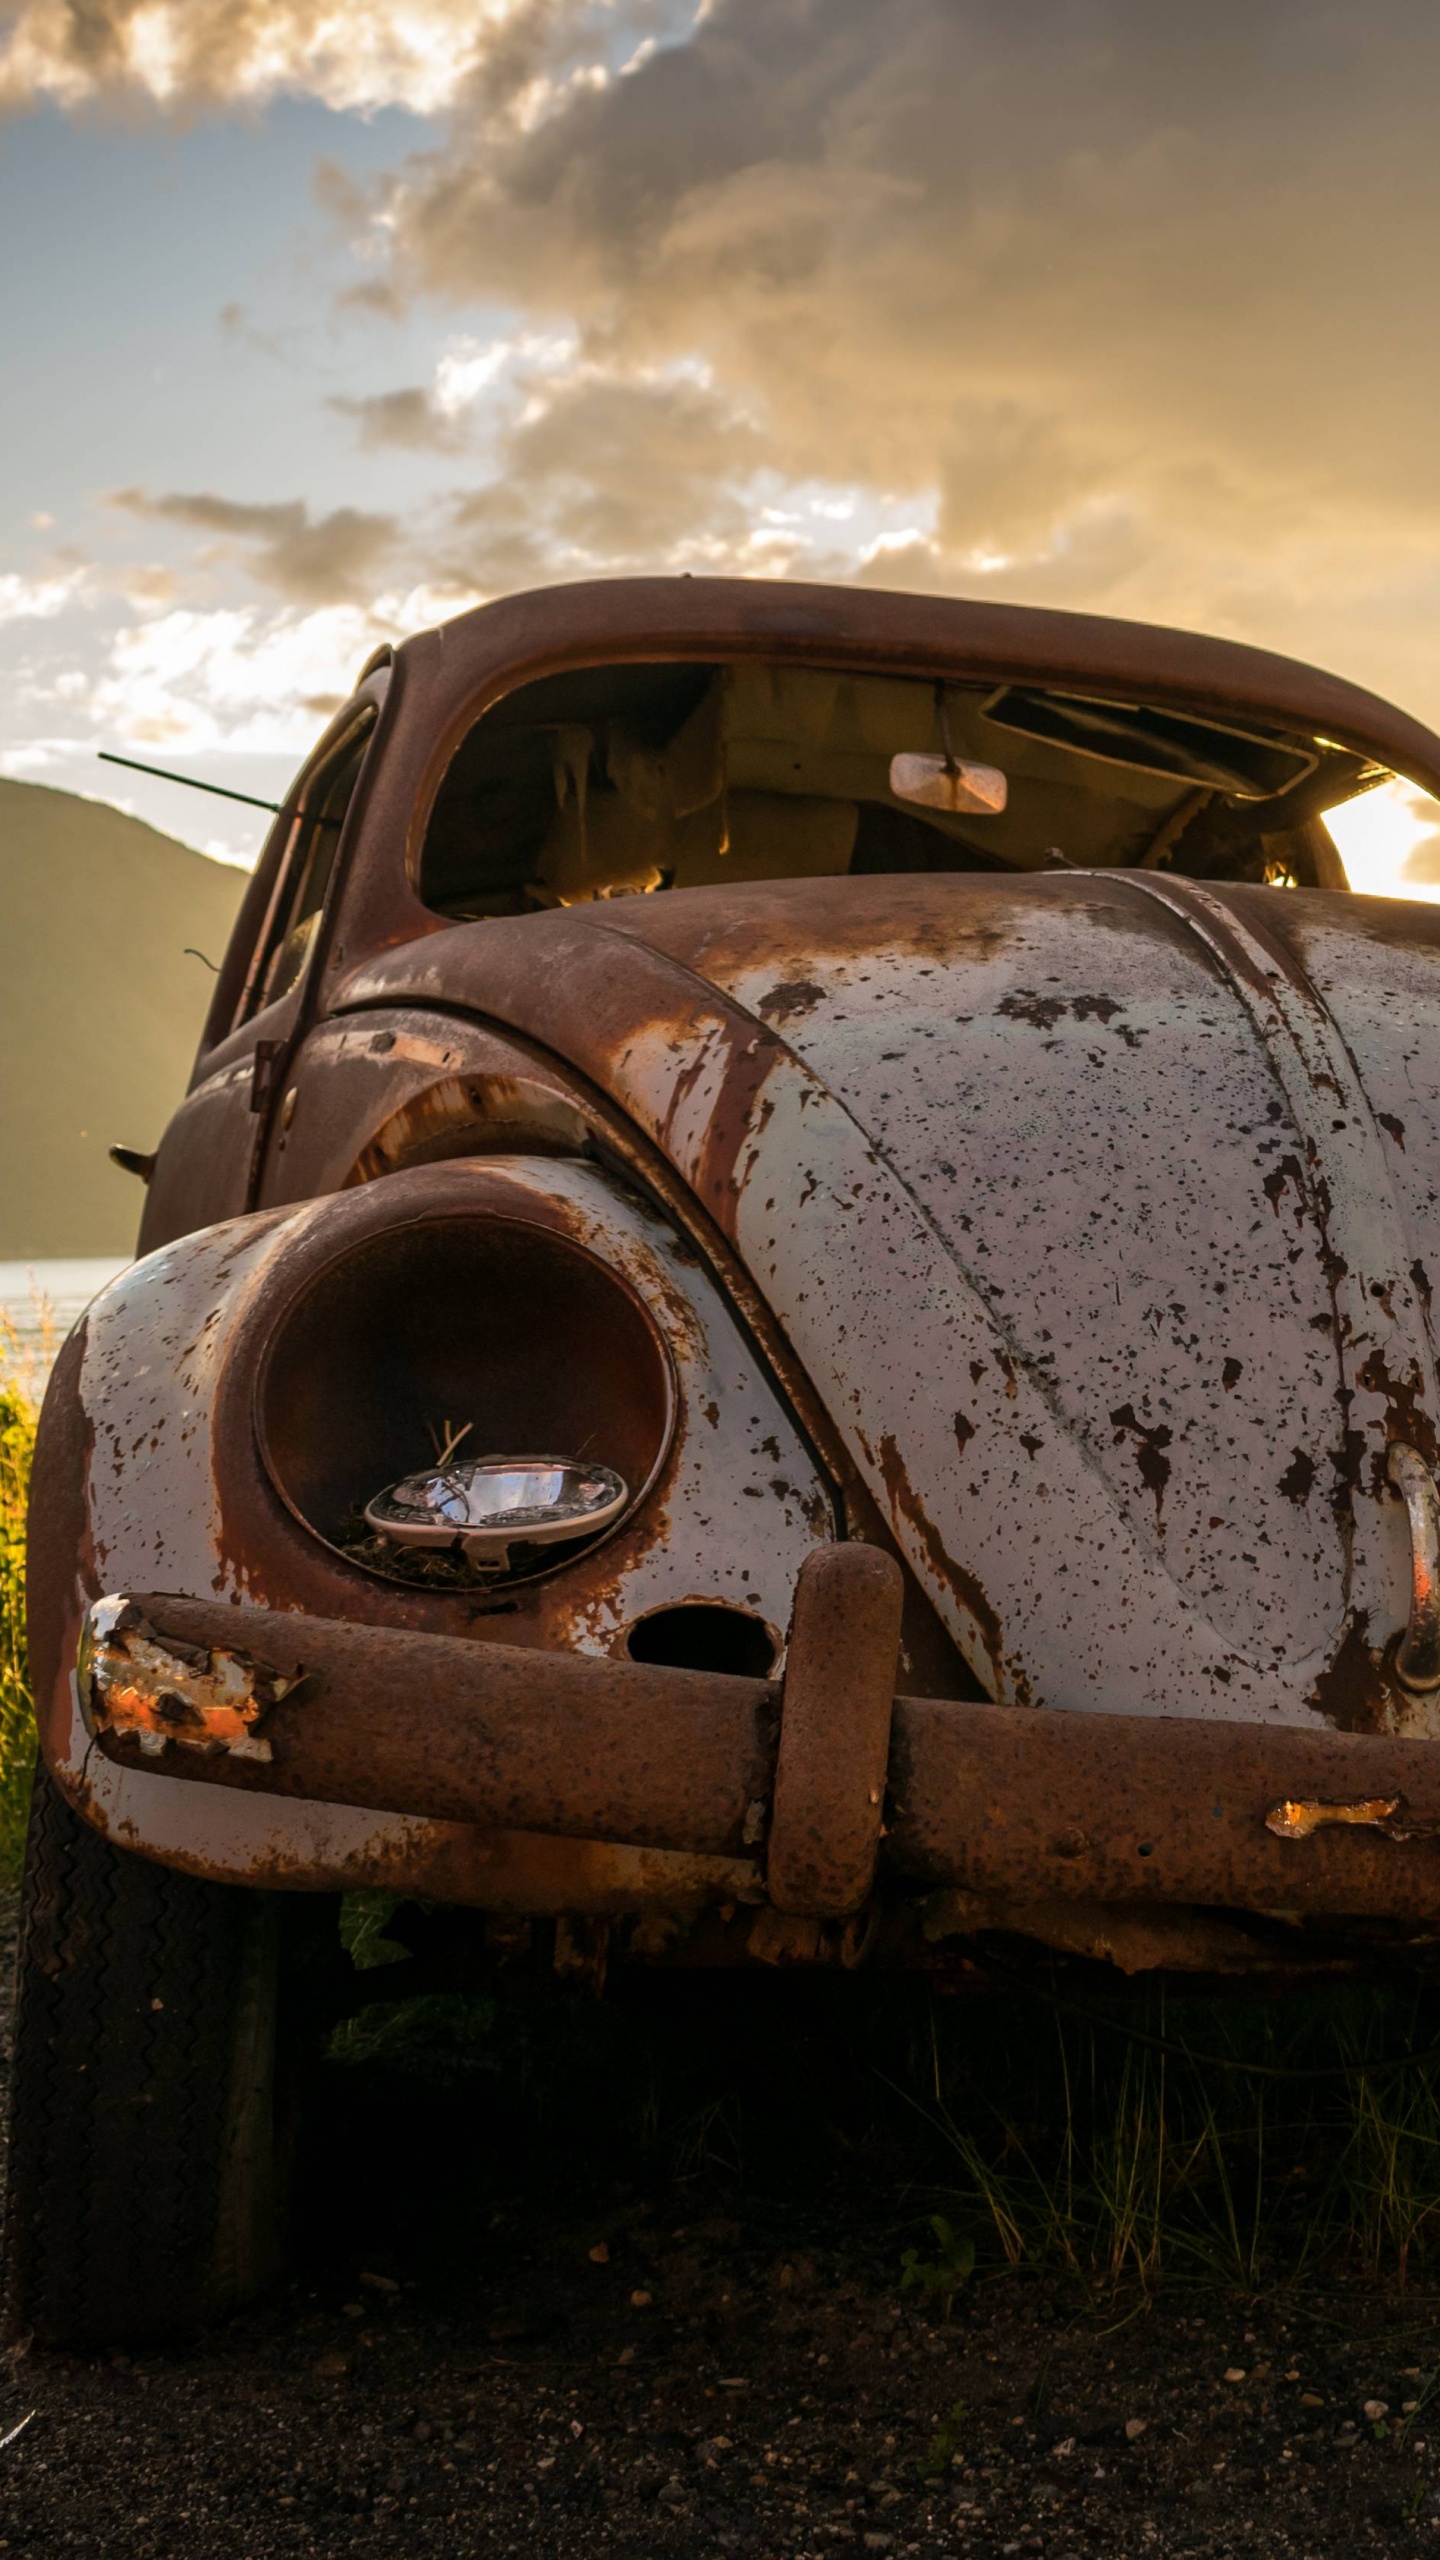 Brown Vintage Car Sur Terrain D'herbe Verte Pendant la Journée. Wallpaper in 1440x2560 Resolution